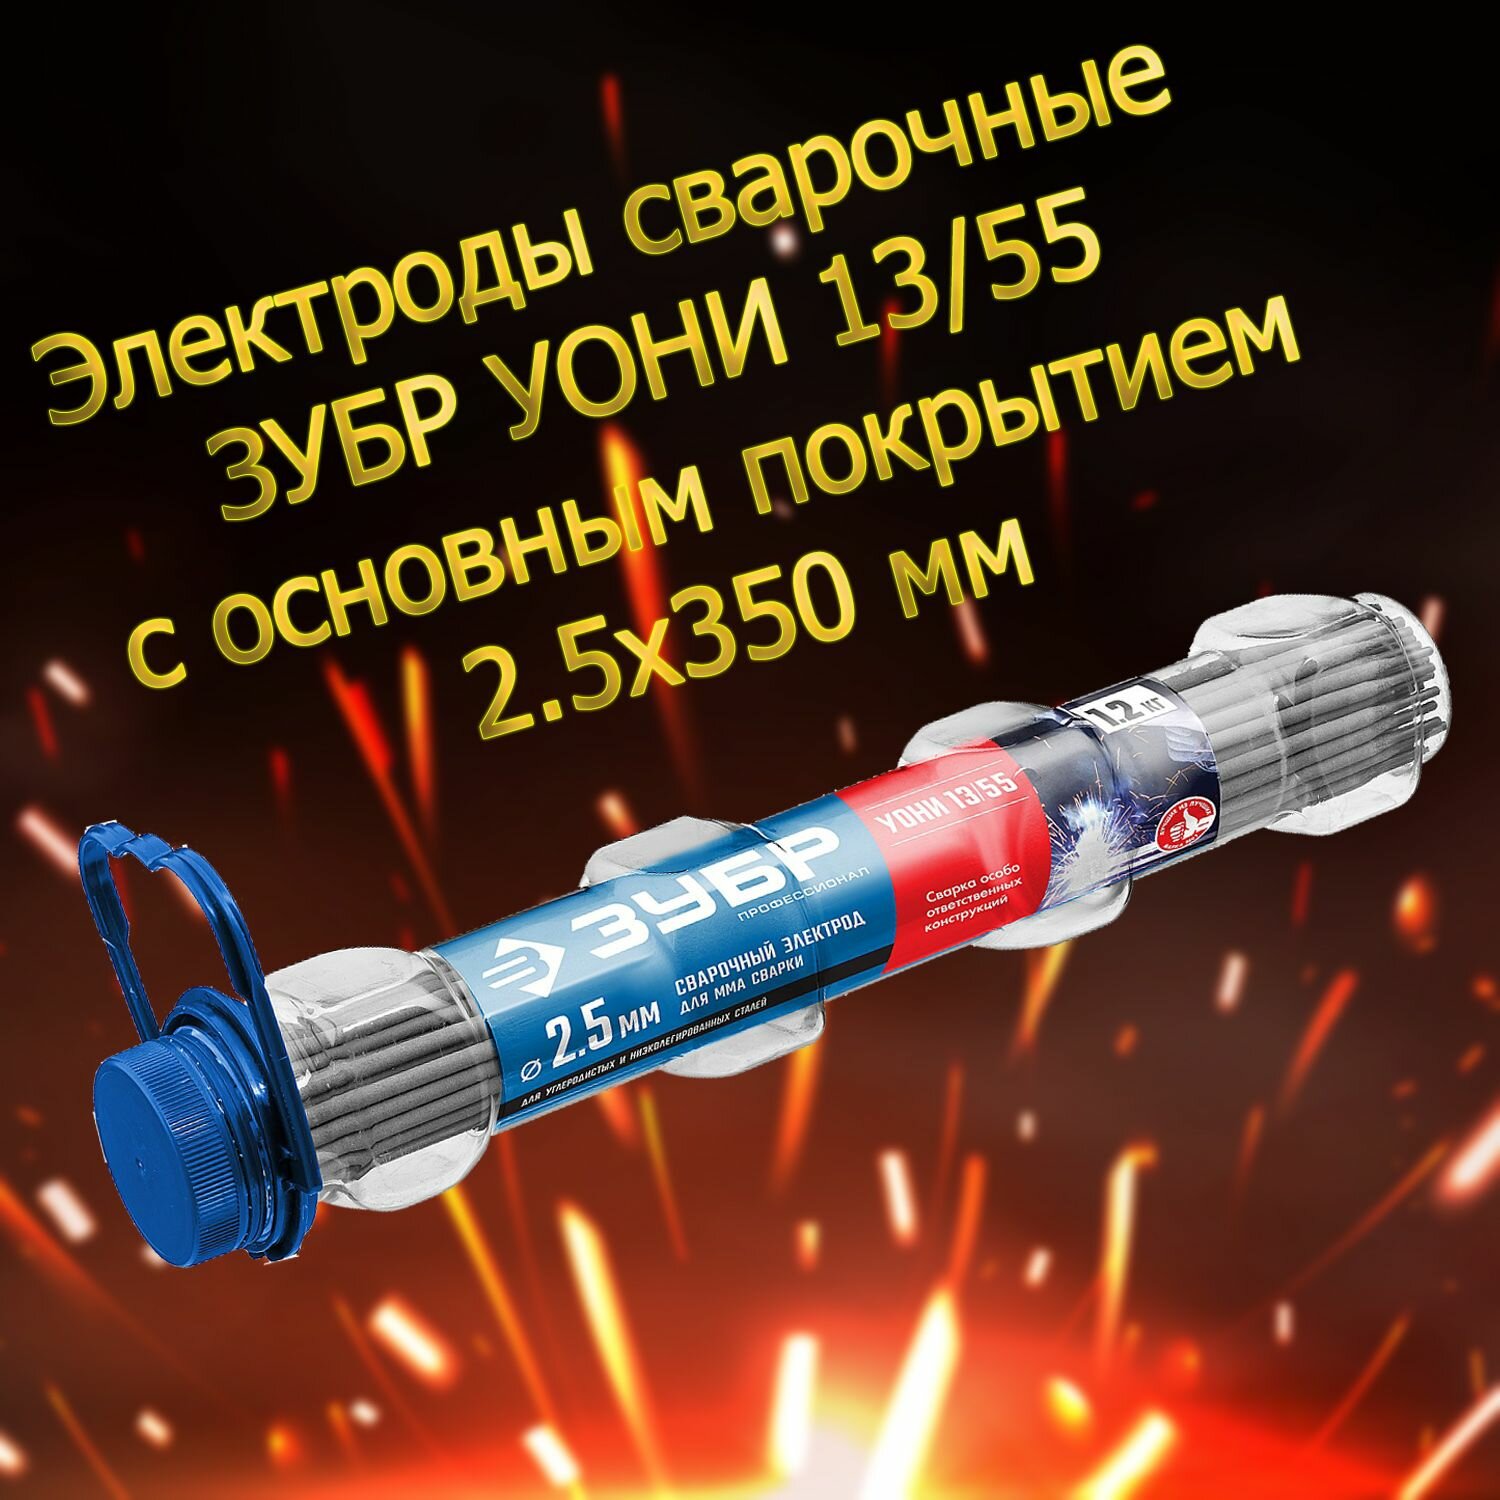 Электроды сварочные ЗУБР Профессионал УОНИ 13/55 с основным покрытием 2.5х350 мм 1.2 кг